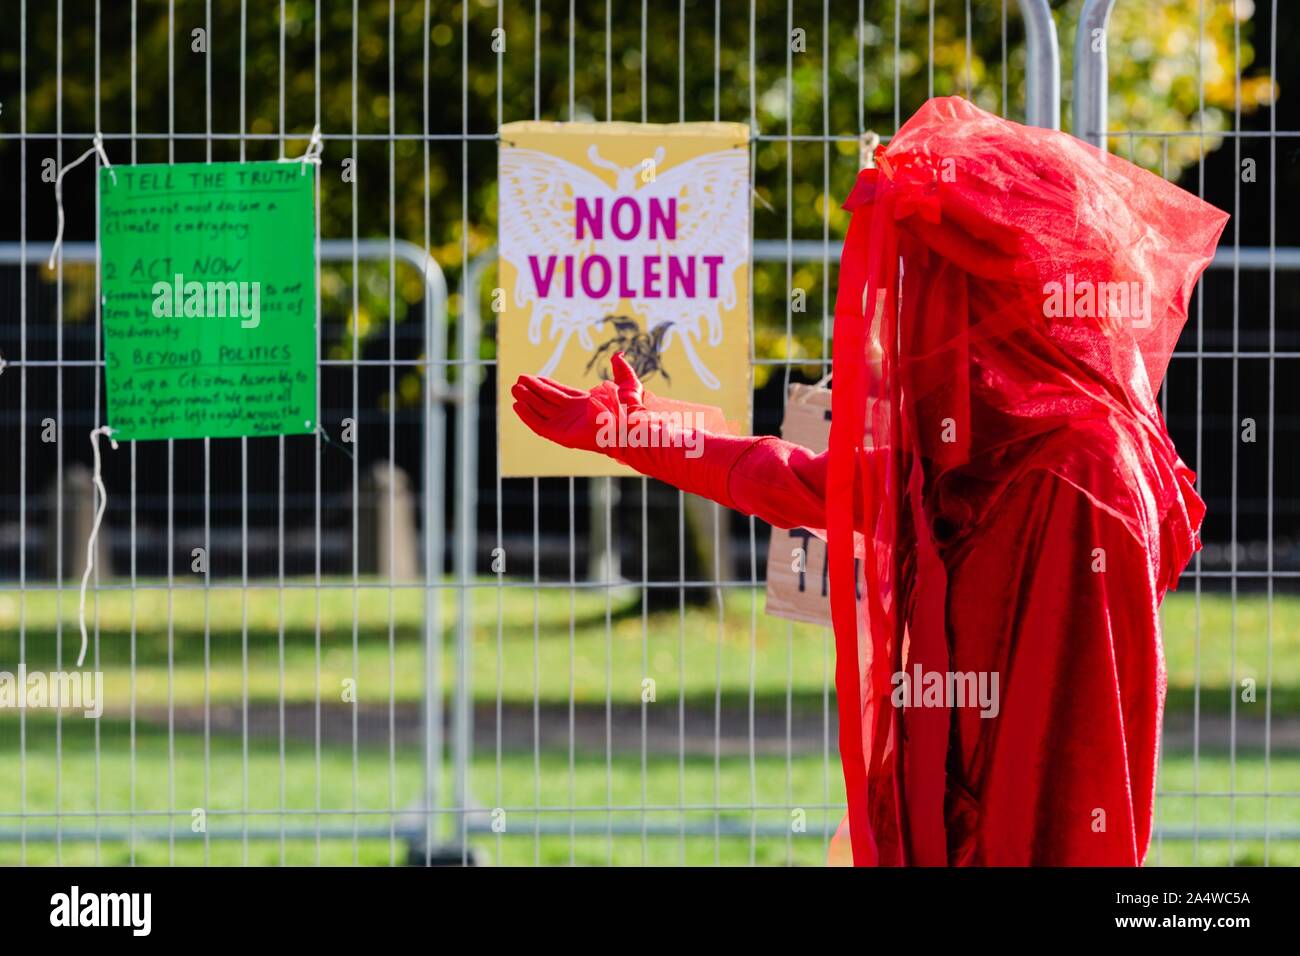 Cardiff, Wales, UK. 16 Oct 2019. Rébellion Extinction rebelles rouge Agir maintenant manifestation devant l'Hôtel de ville de Cardiff, Cardiff, Pays de Galles, Royaume-Uni Crédit : Tracey Paddison/Alamy Live News Banque D'Images